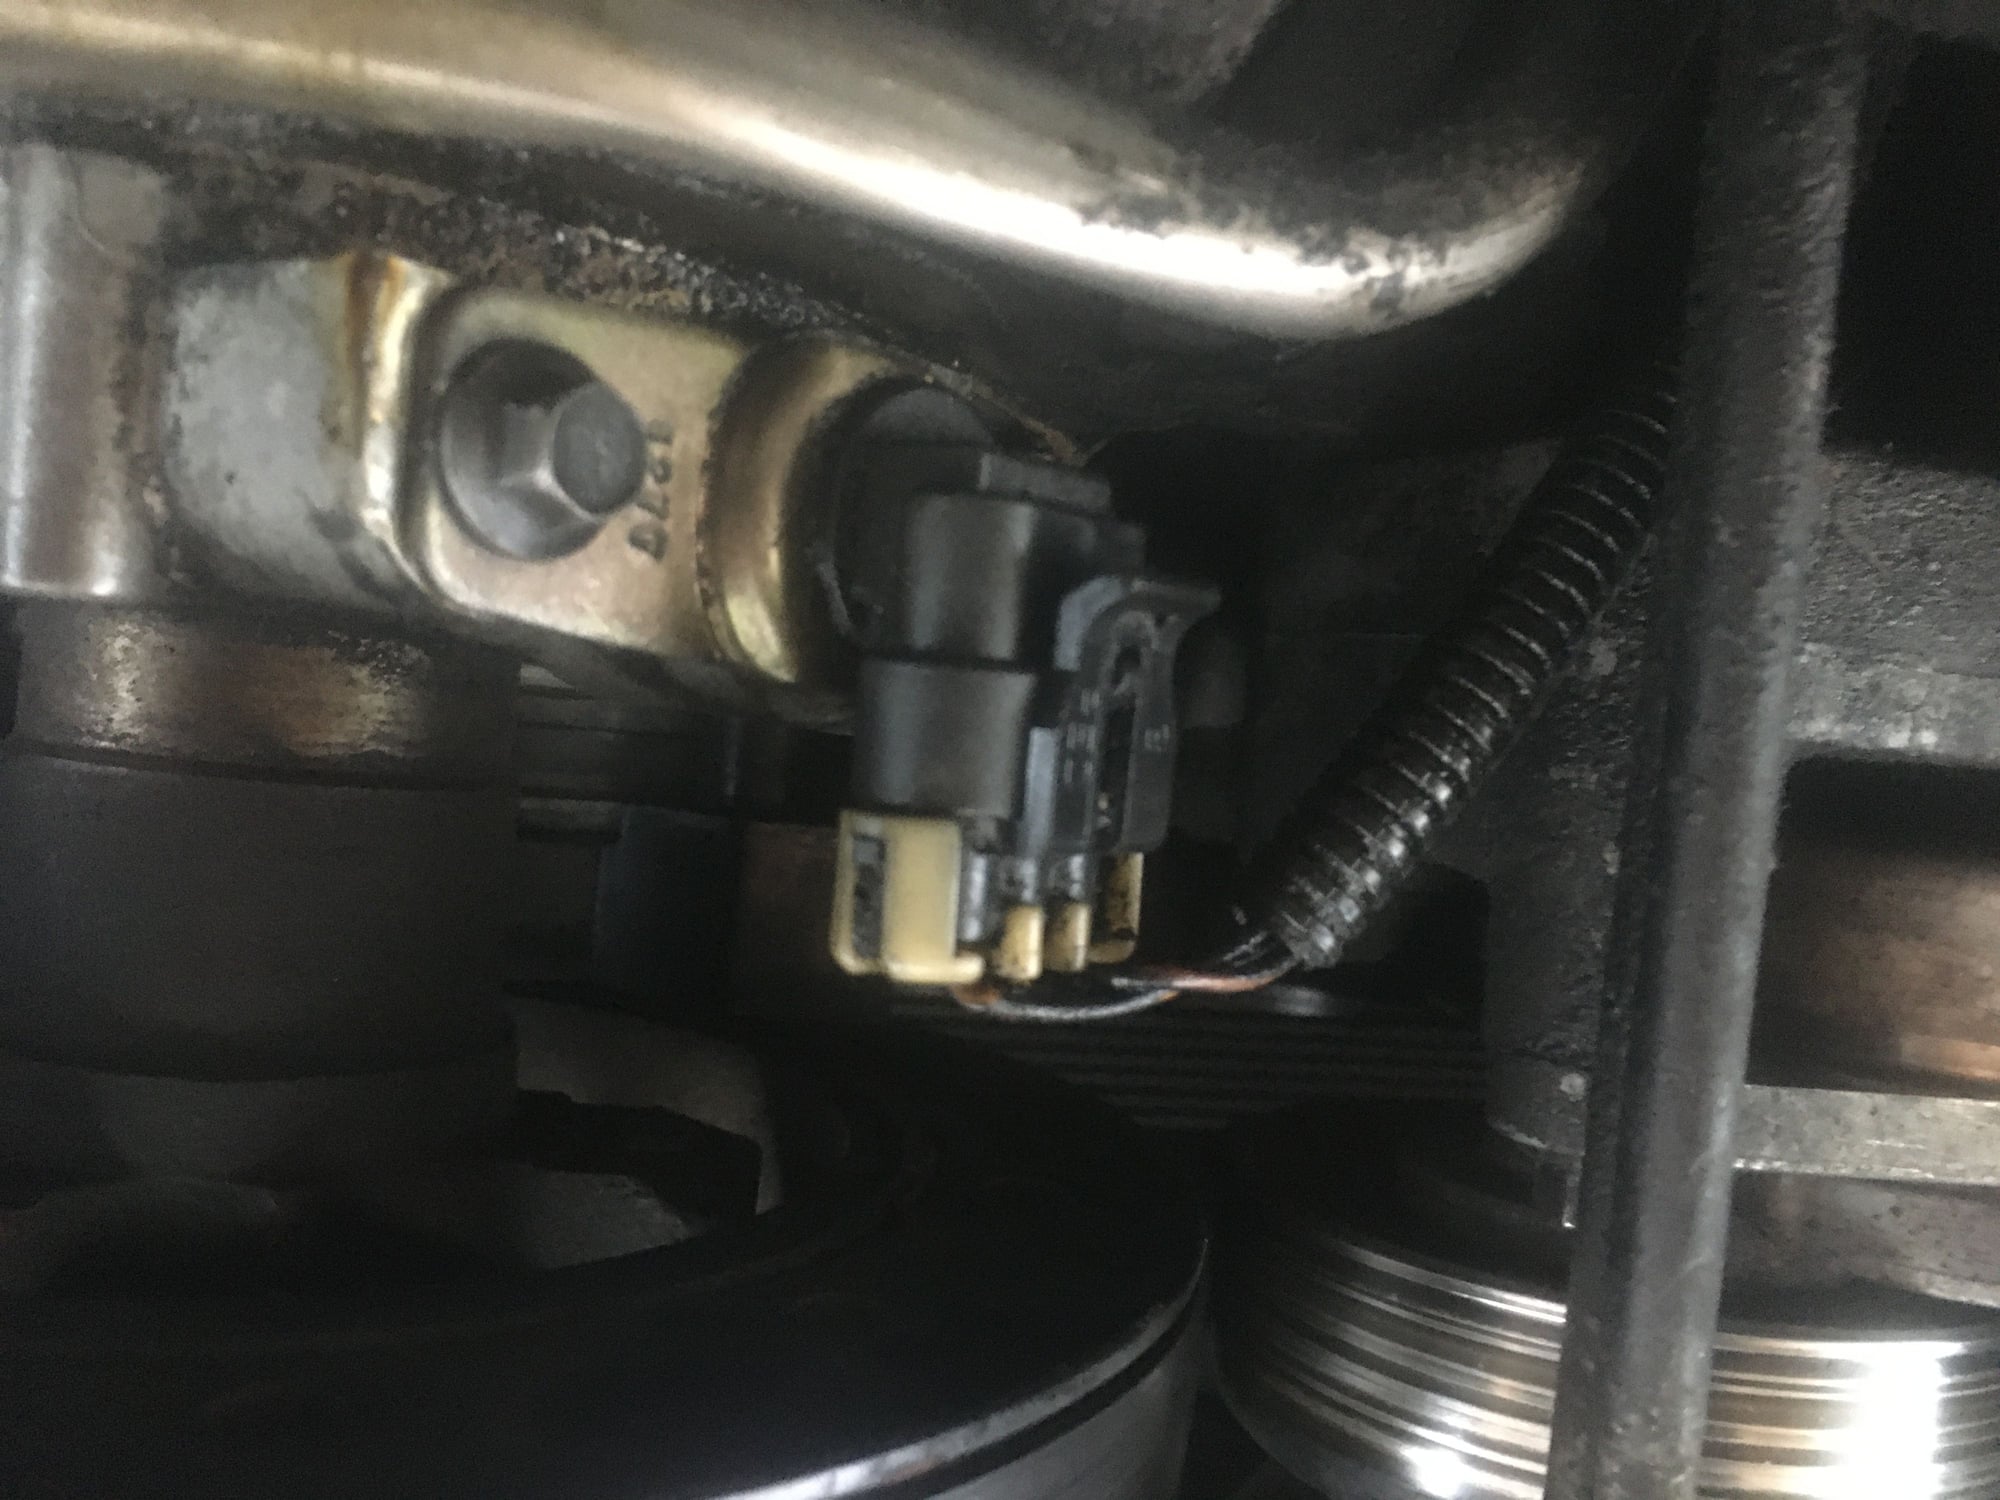 timing cover leak repair misfire